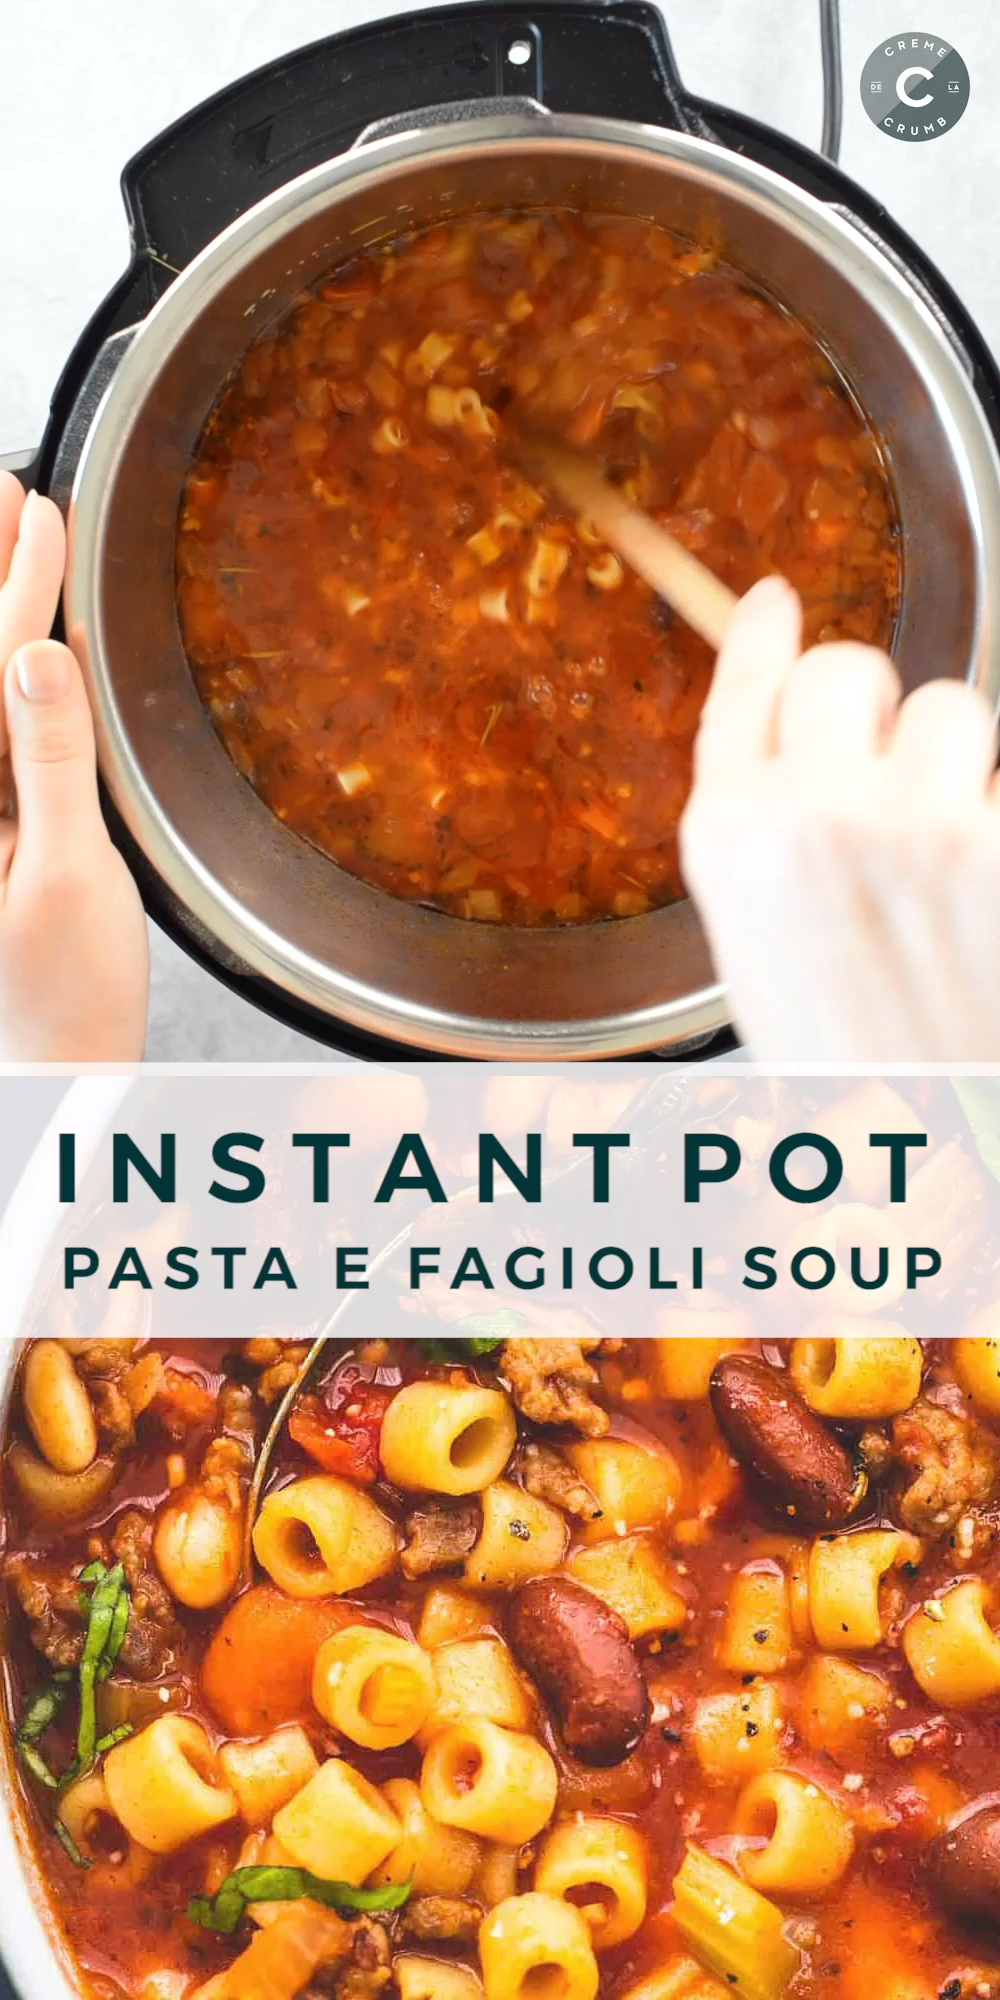 Instant Pot Pasta e Fagioli Soup -   19 healthy instant pot recipes easy ideas